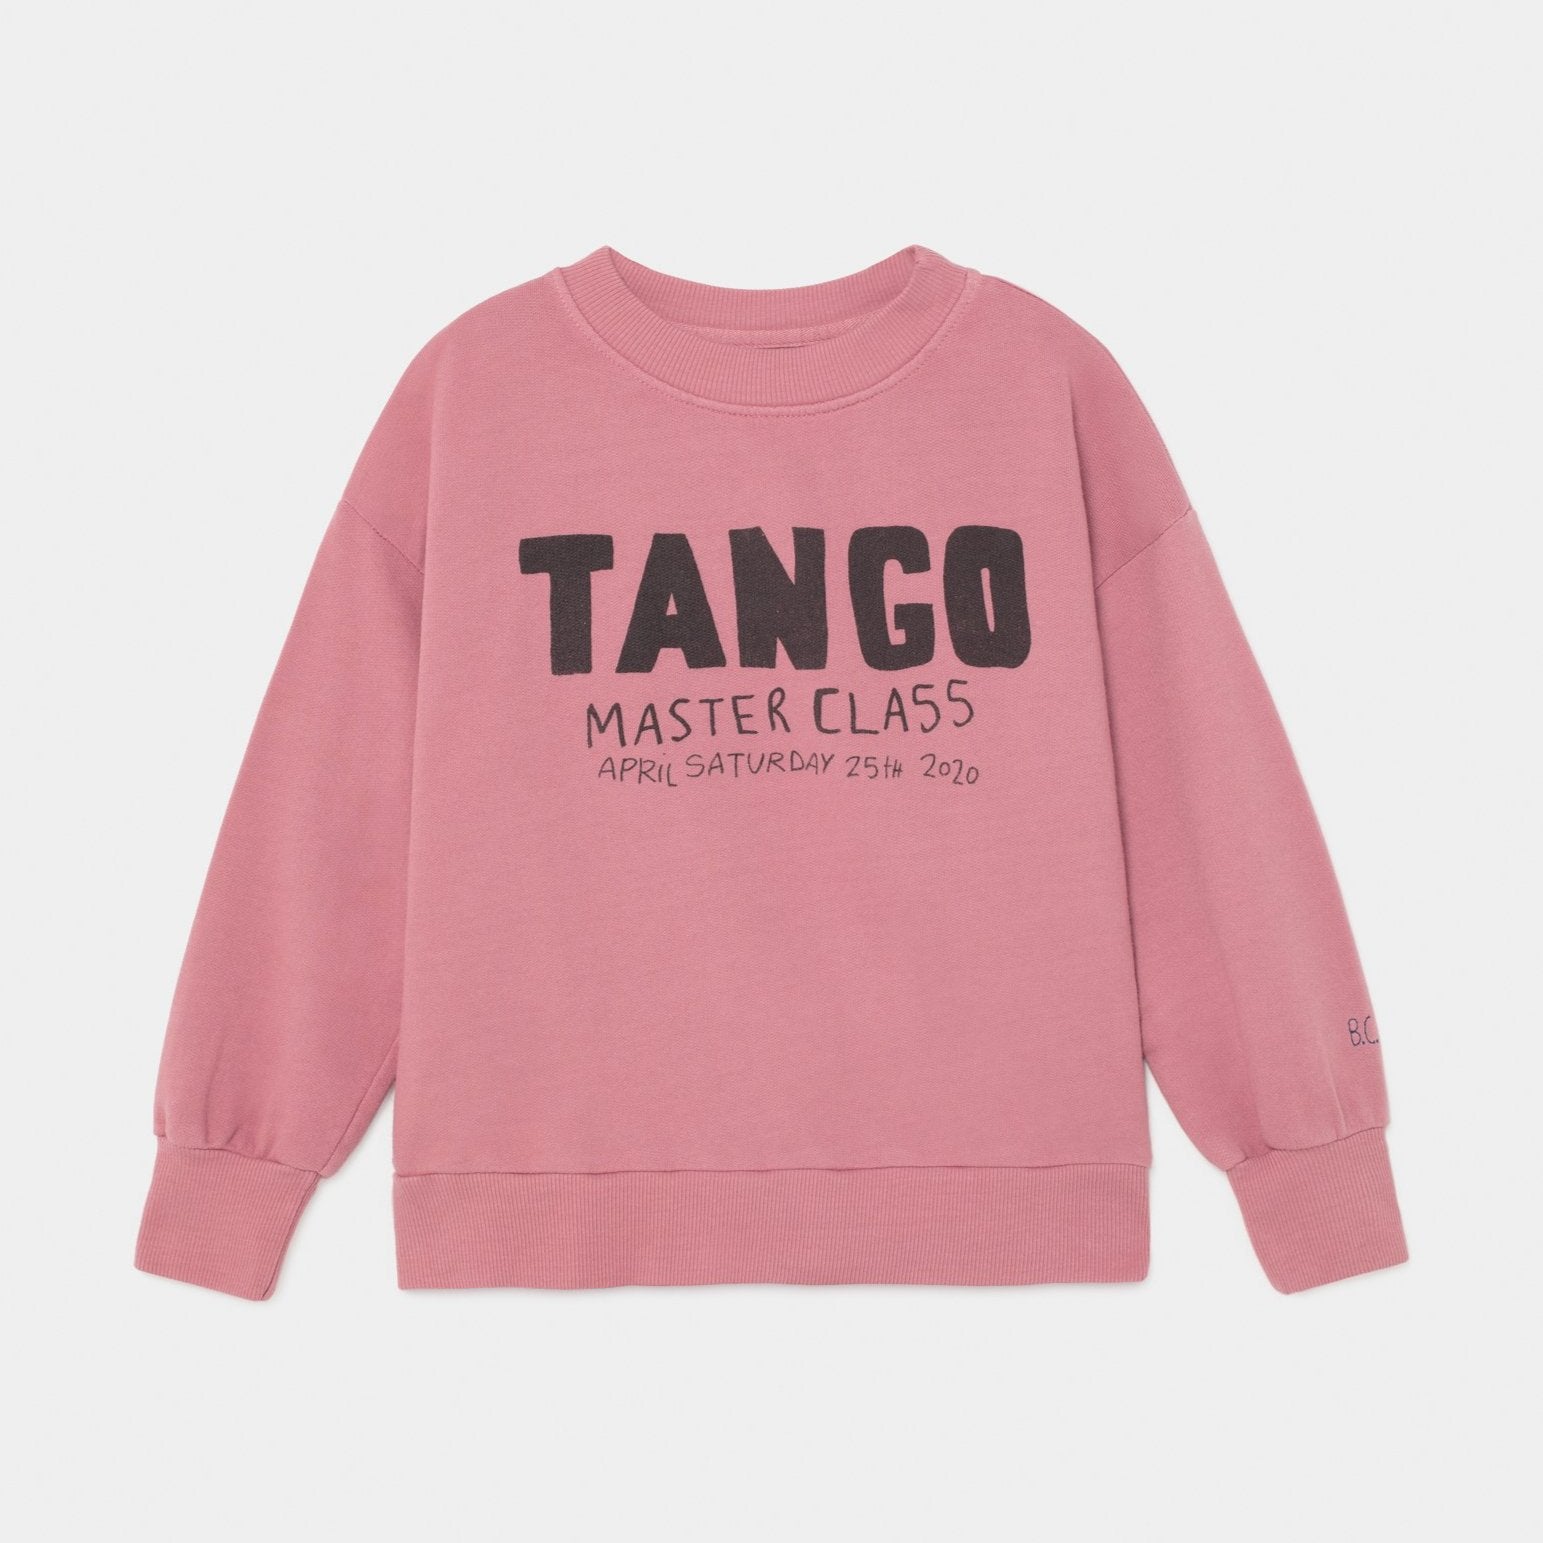 tango sweatshirt